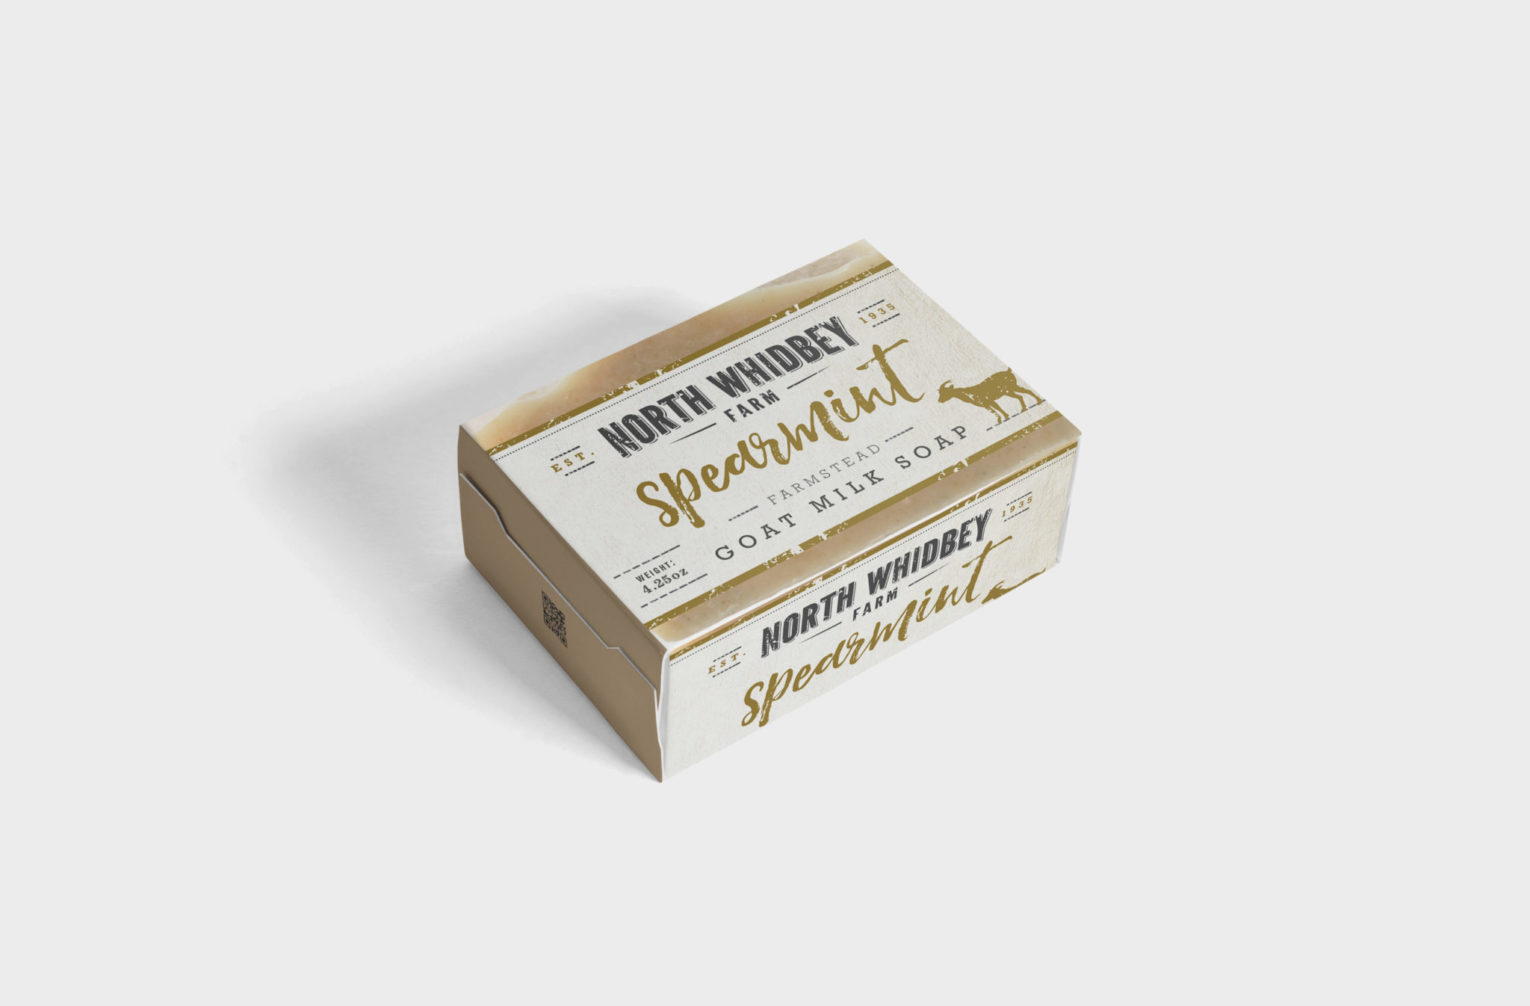 Spearmint Goat Milk Soap Packaging label Mockup